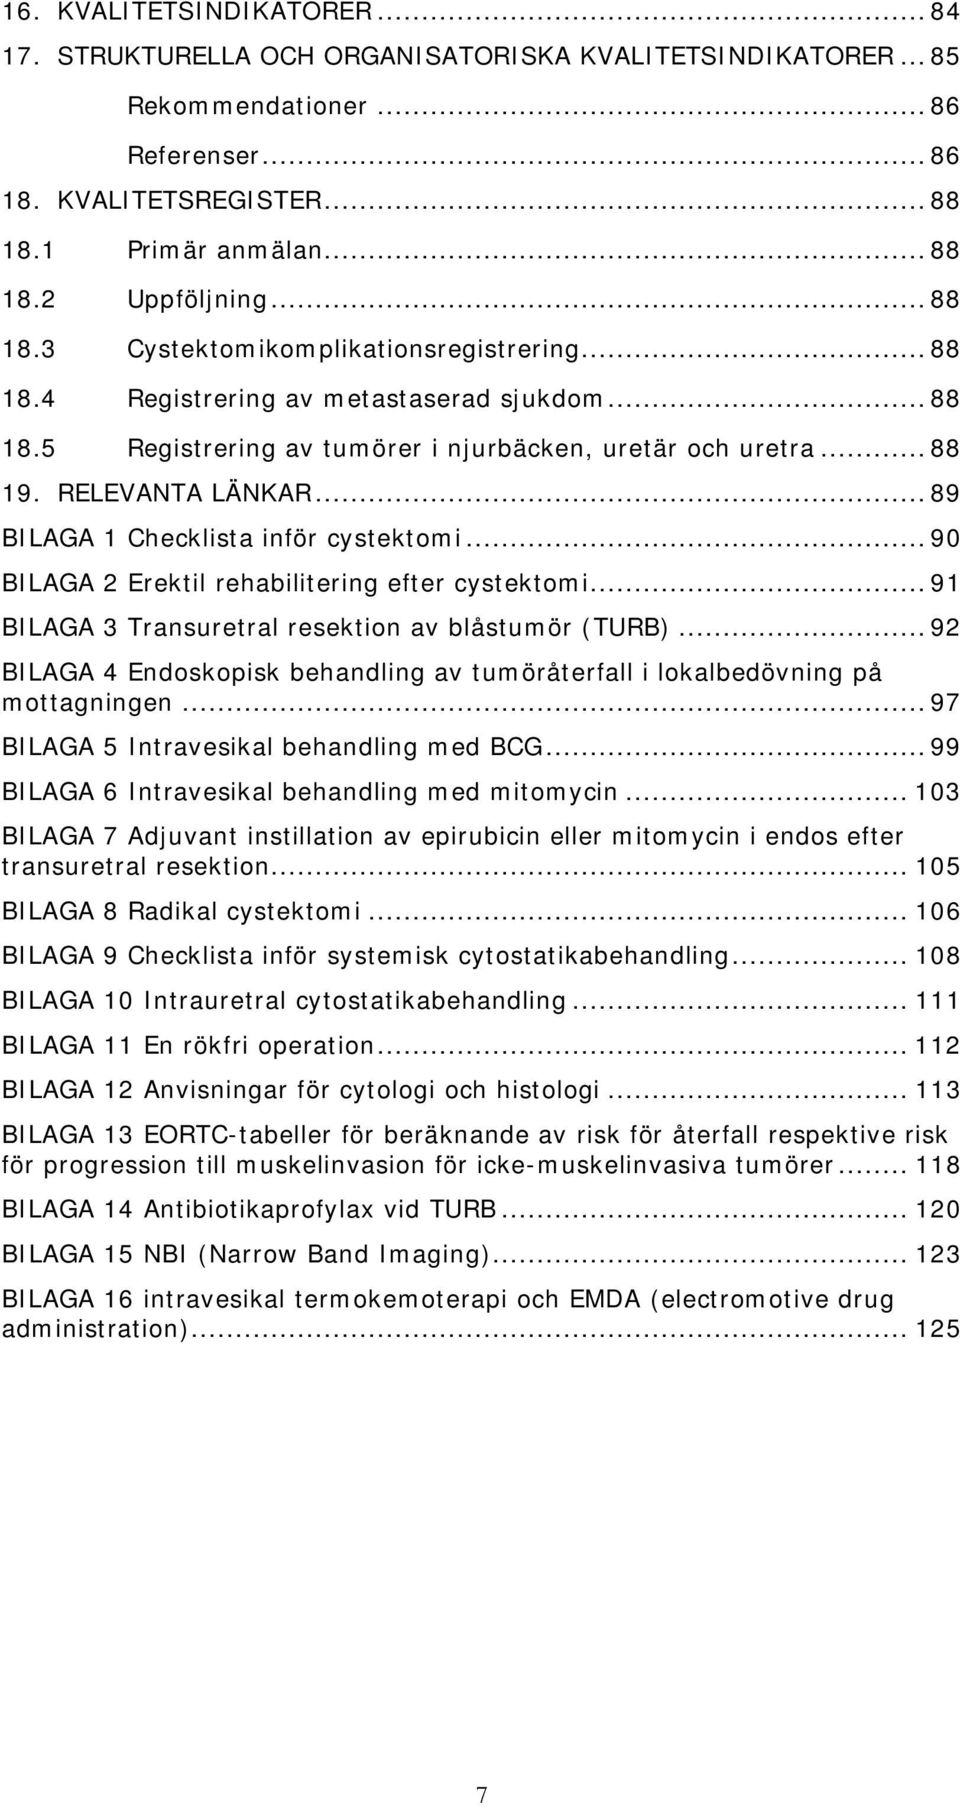 .. 89 BILAGA 1 Checklista inför cystektomi... 90 BILAGA 2 Erektil rehabilitering efter cystektomi... 91 BILAGA 3 Transuretral resektion av blåstumör (TURB).